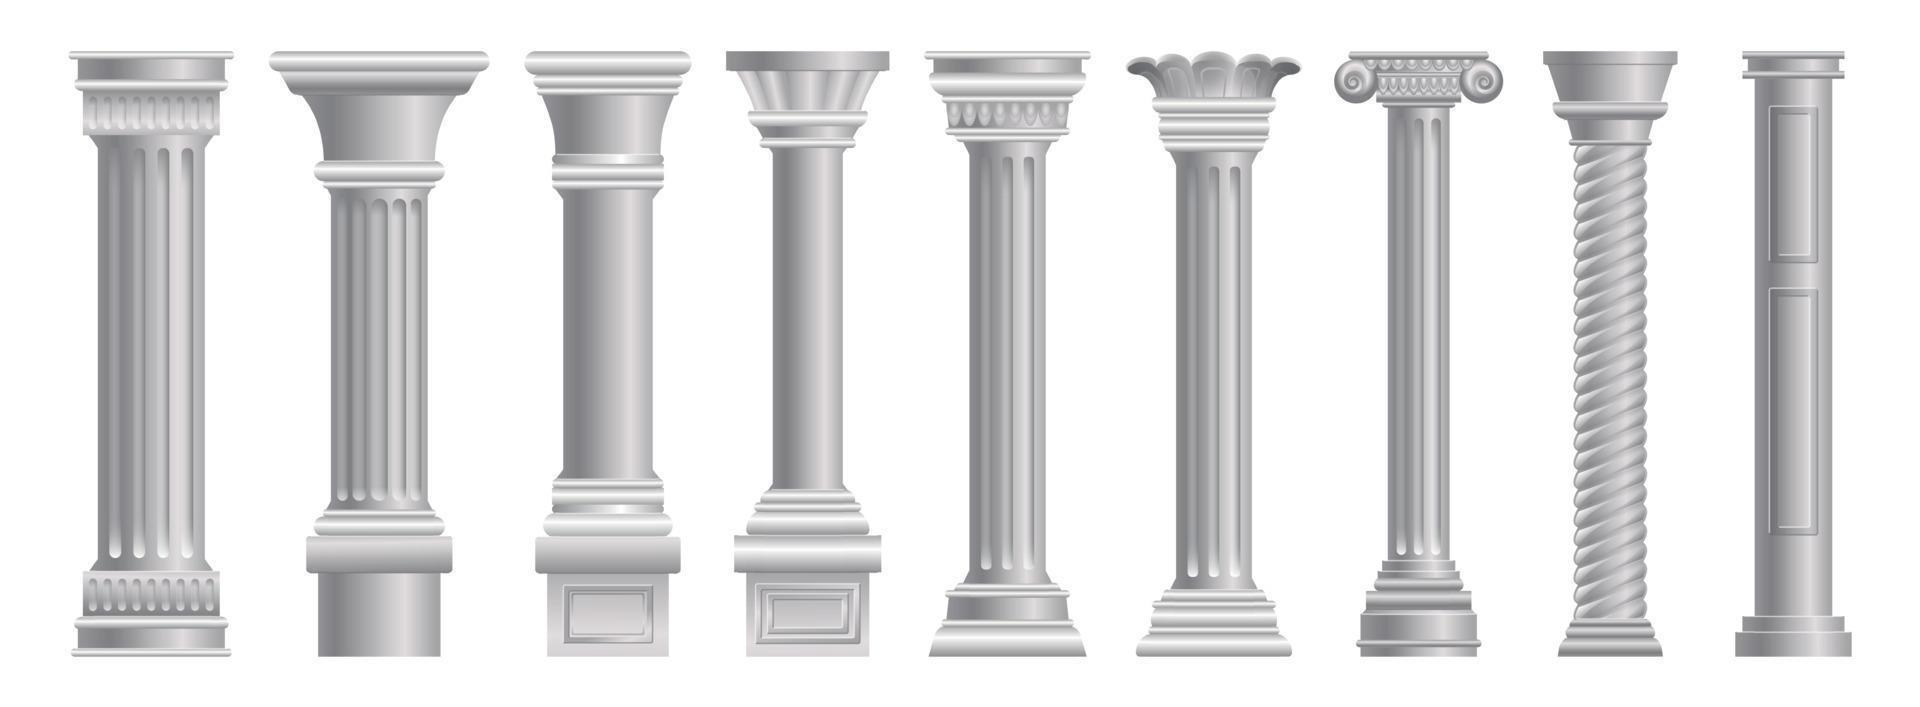 ensemble d'icônes de pilier, style dessin animé vecteur